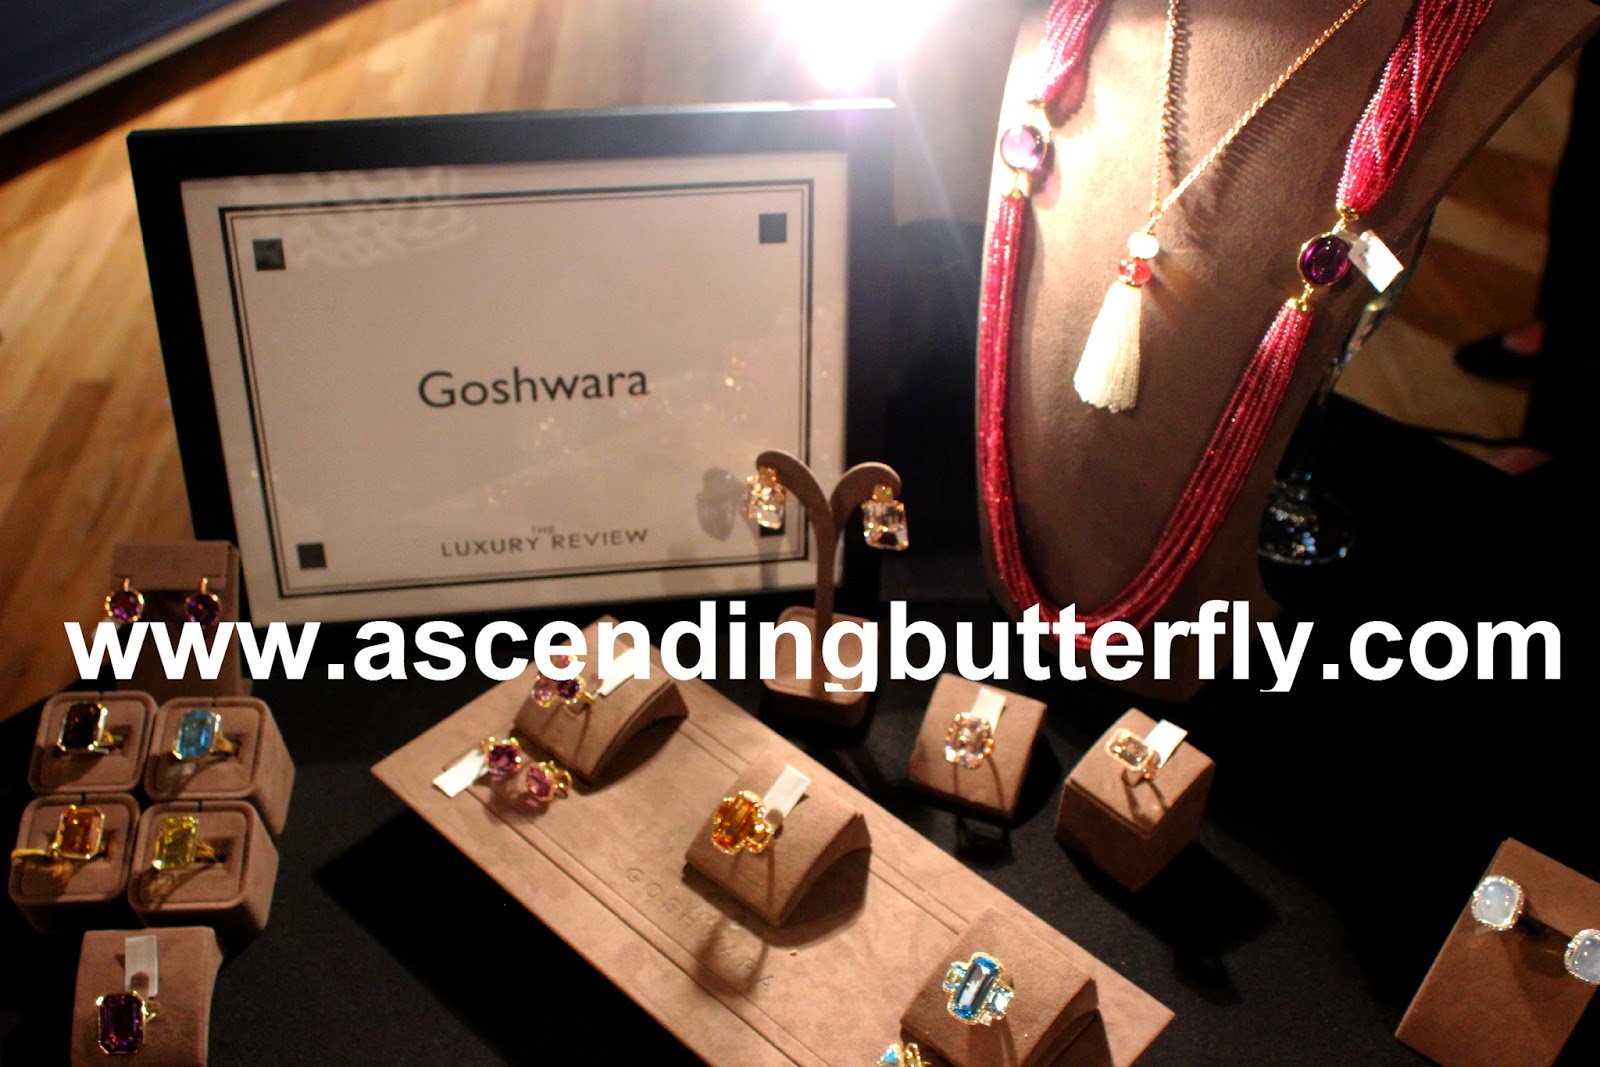 Goshwara Jewelry The Luxury Review Fall 2014